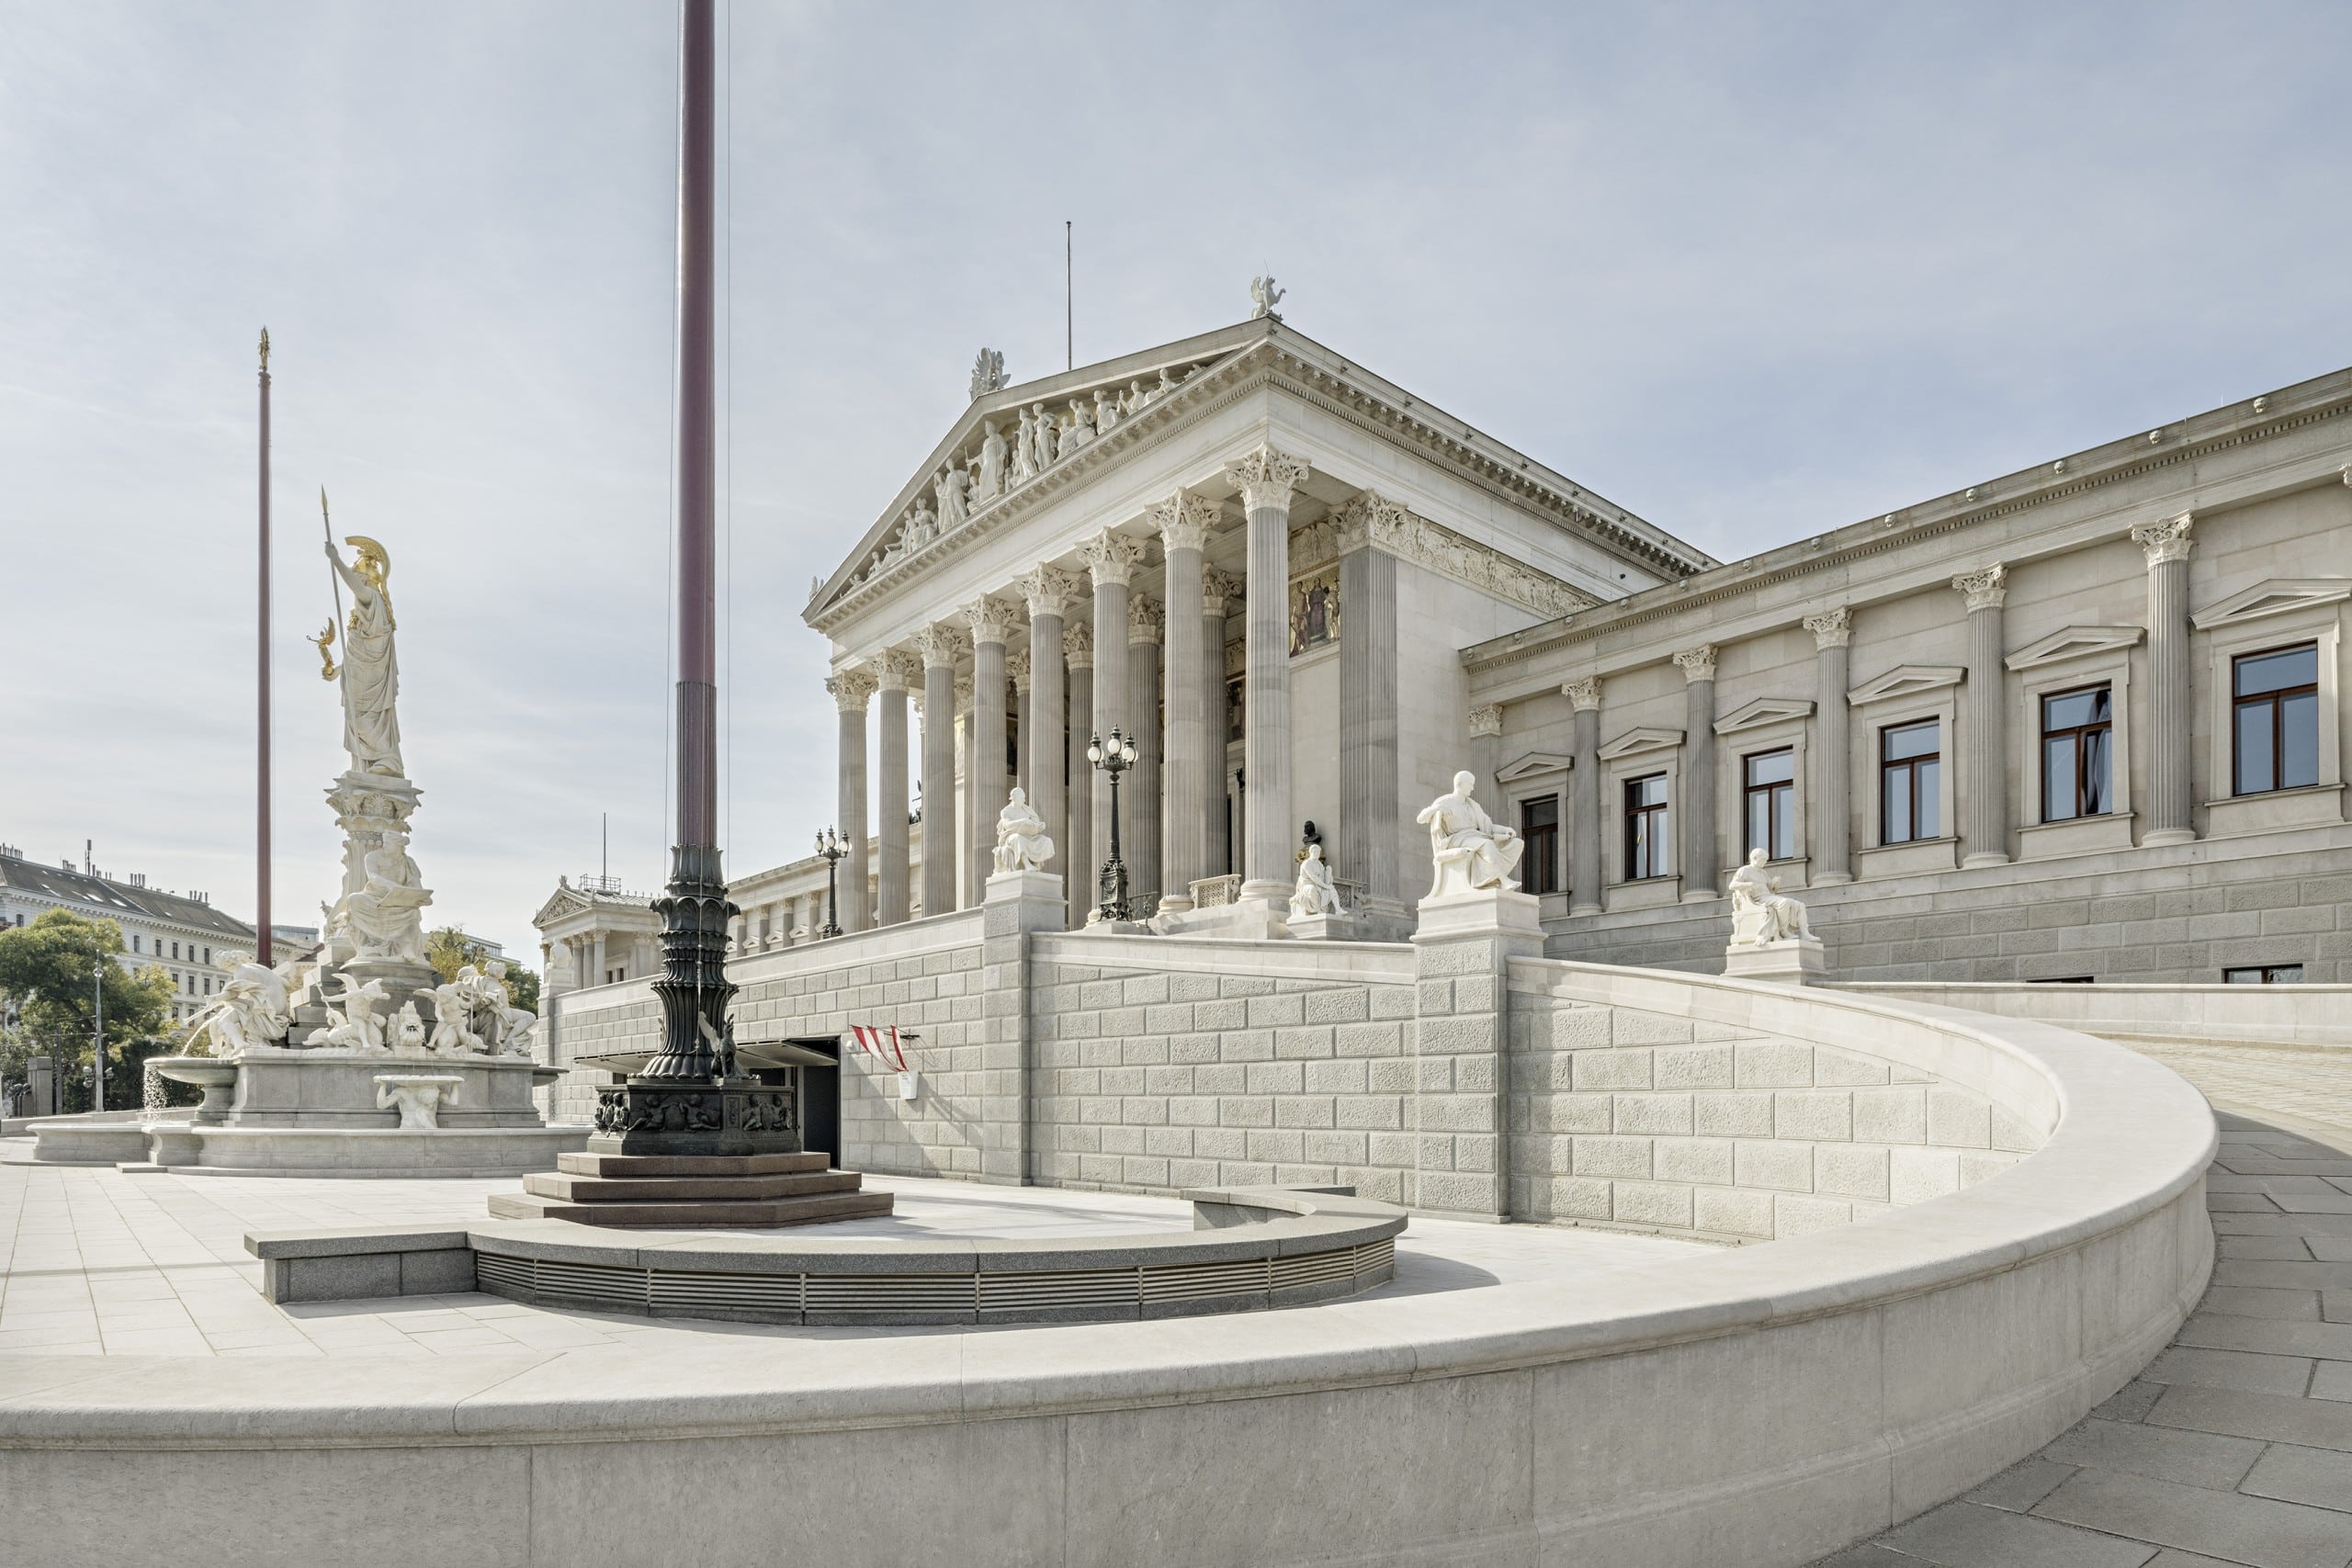 Das renovierte Parlament Wien öffnet seine Pforten nun für alle. Die neue Ausstellung „Demokratikum“ soll Demokratie erklären. Foto: Marcus Sies